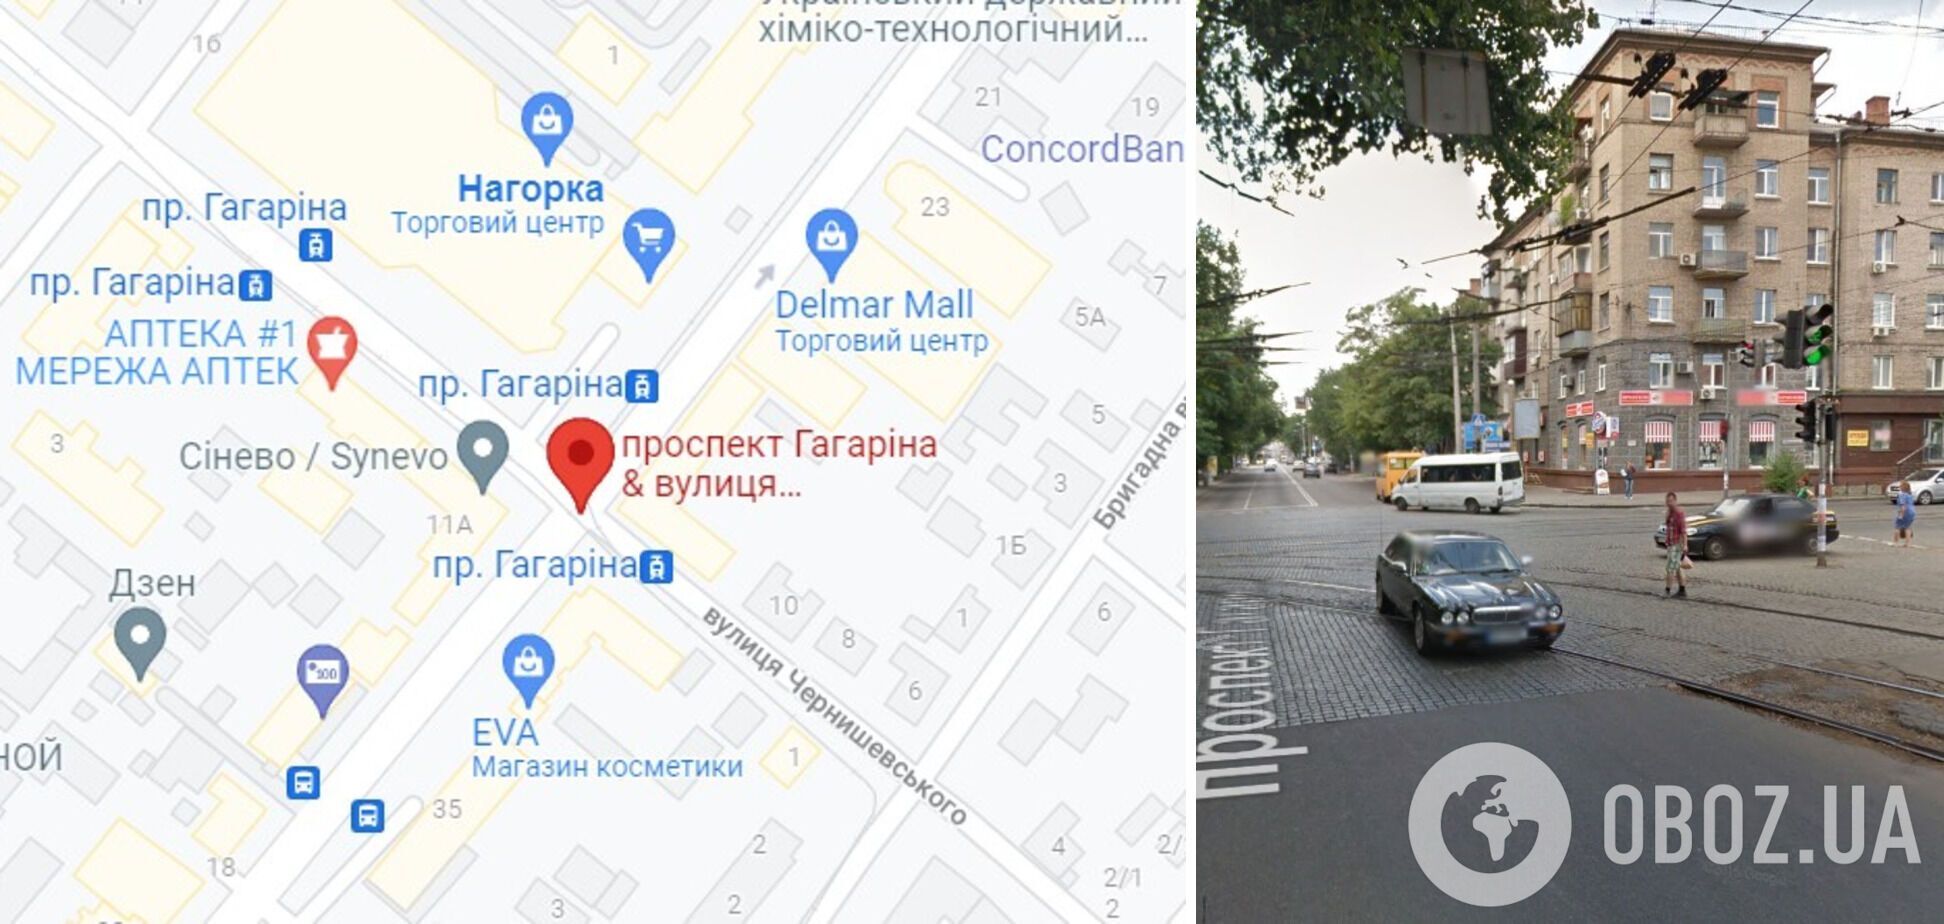 Авария произошла на перекрестке проспекта Гагарина и улицы Чернышевского